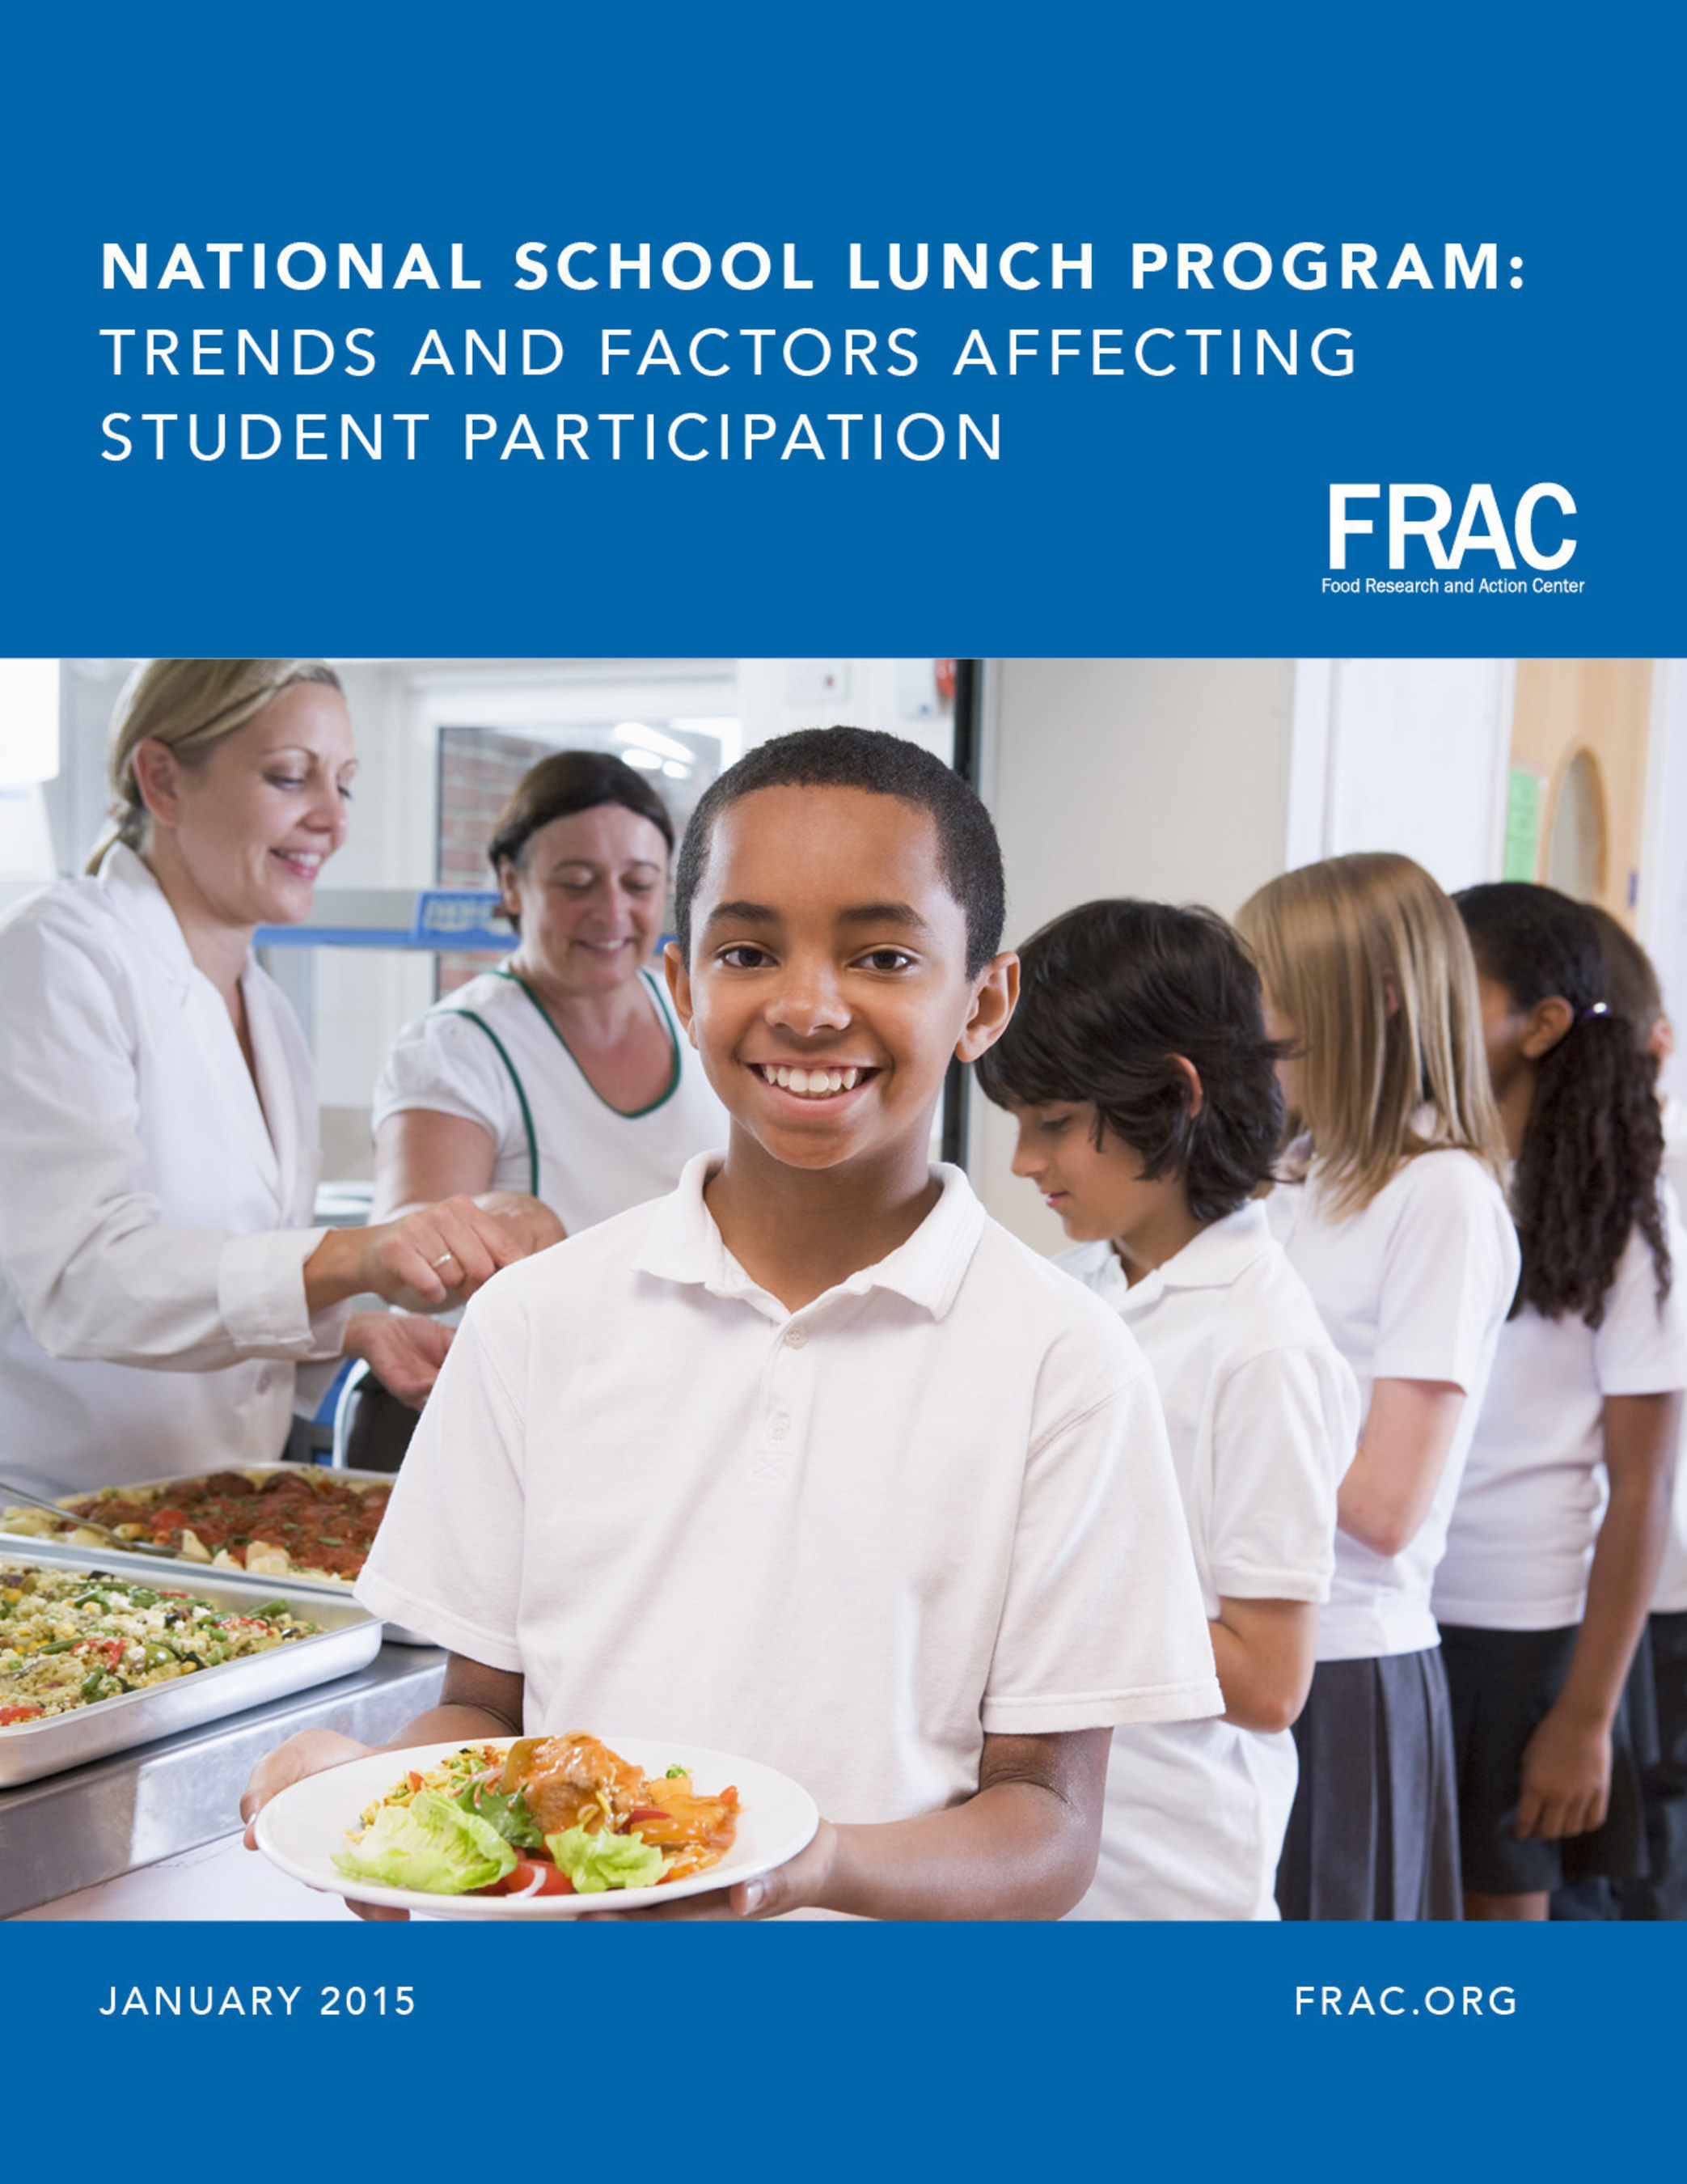 Factors impacting school lunch participation